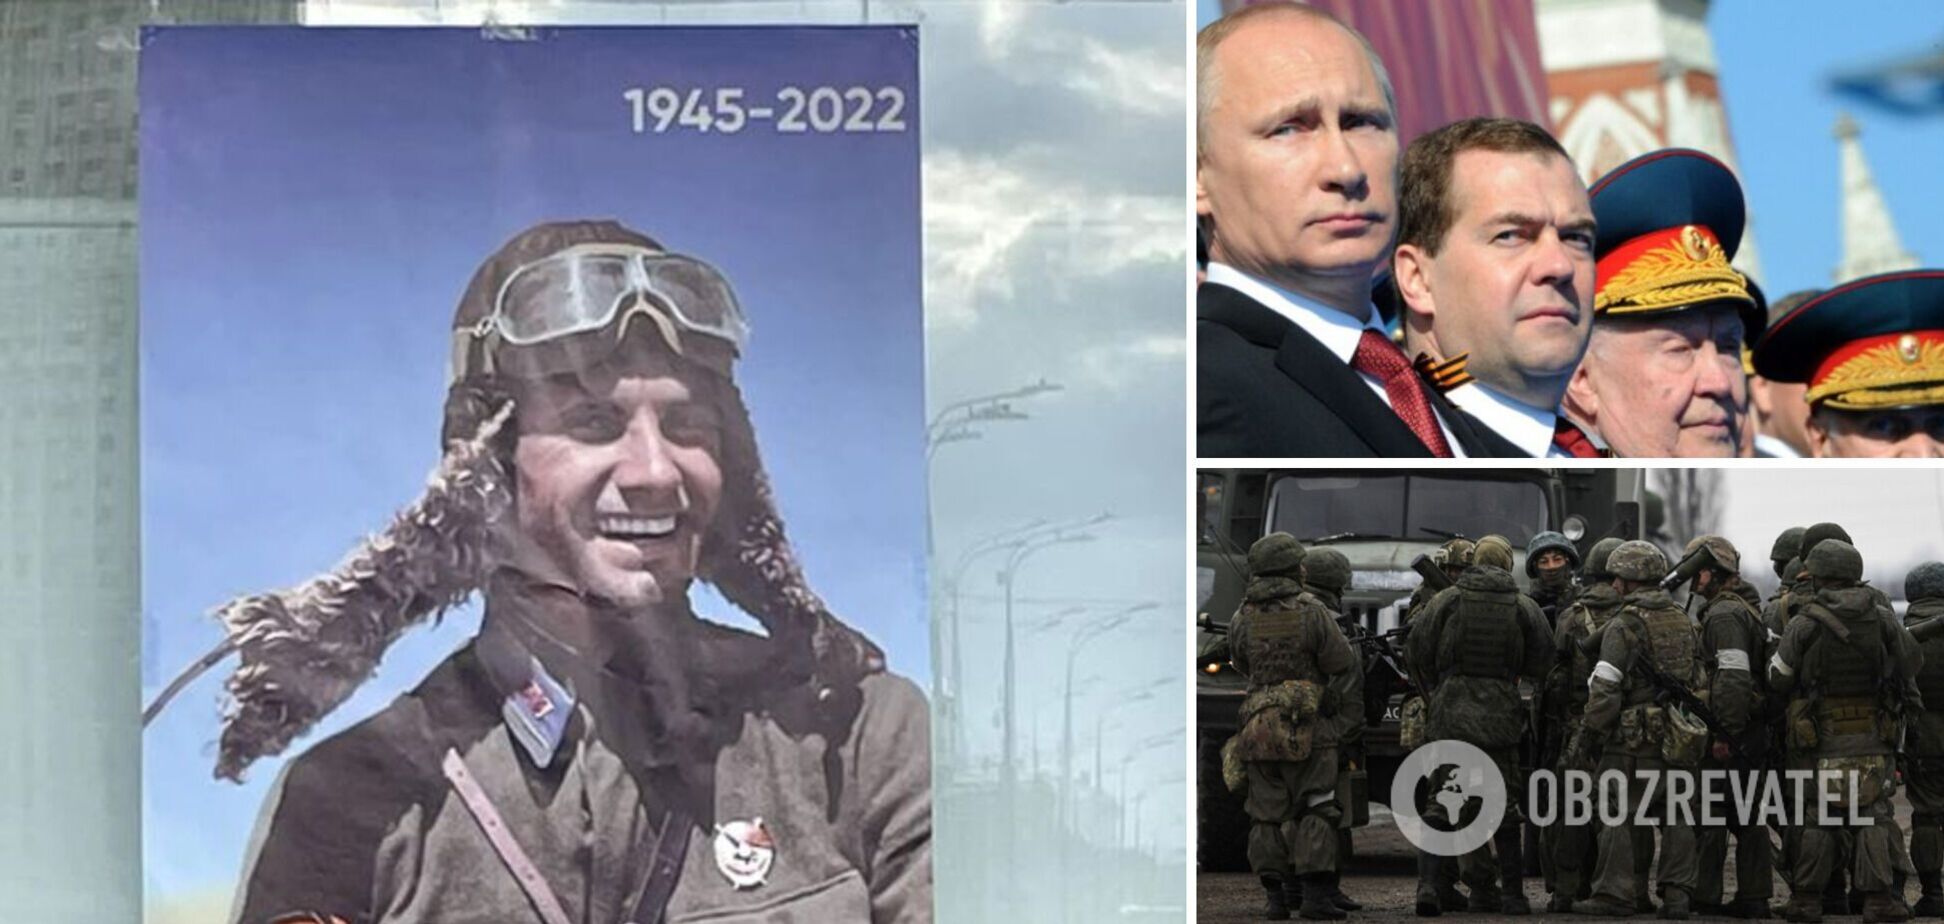 РФ разбомбила родной город и место захоронения летчика, которого разместили на 'плакатах победы' в Москве